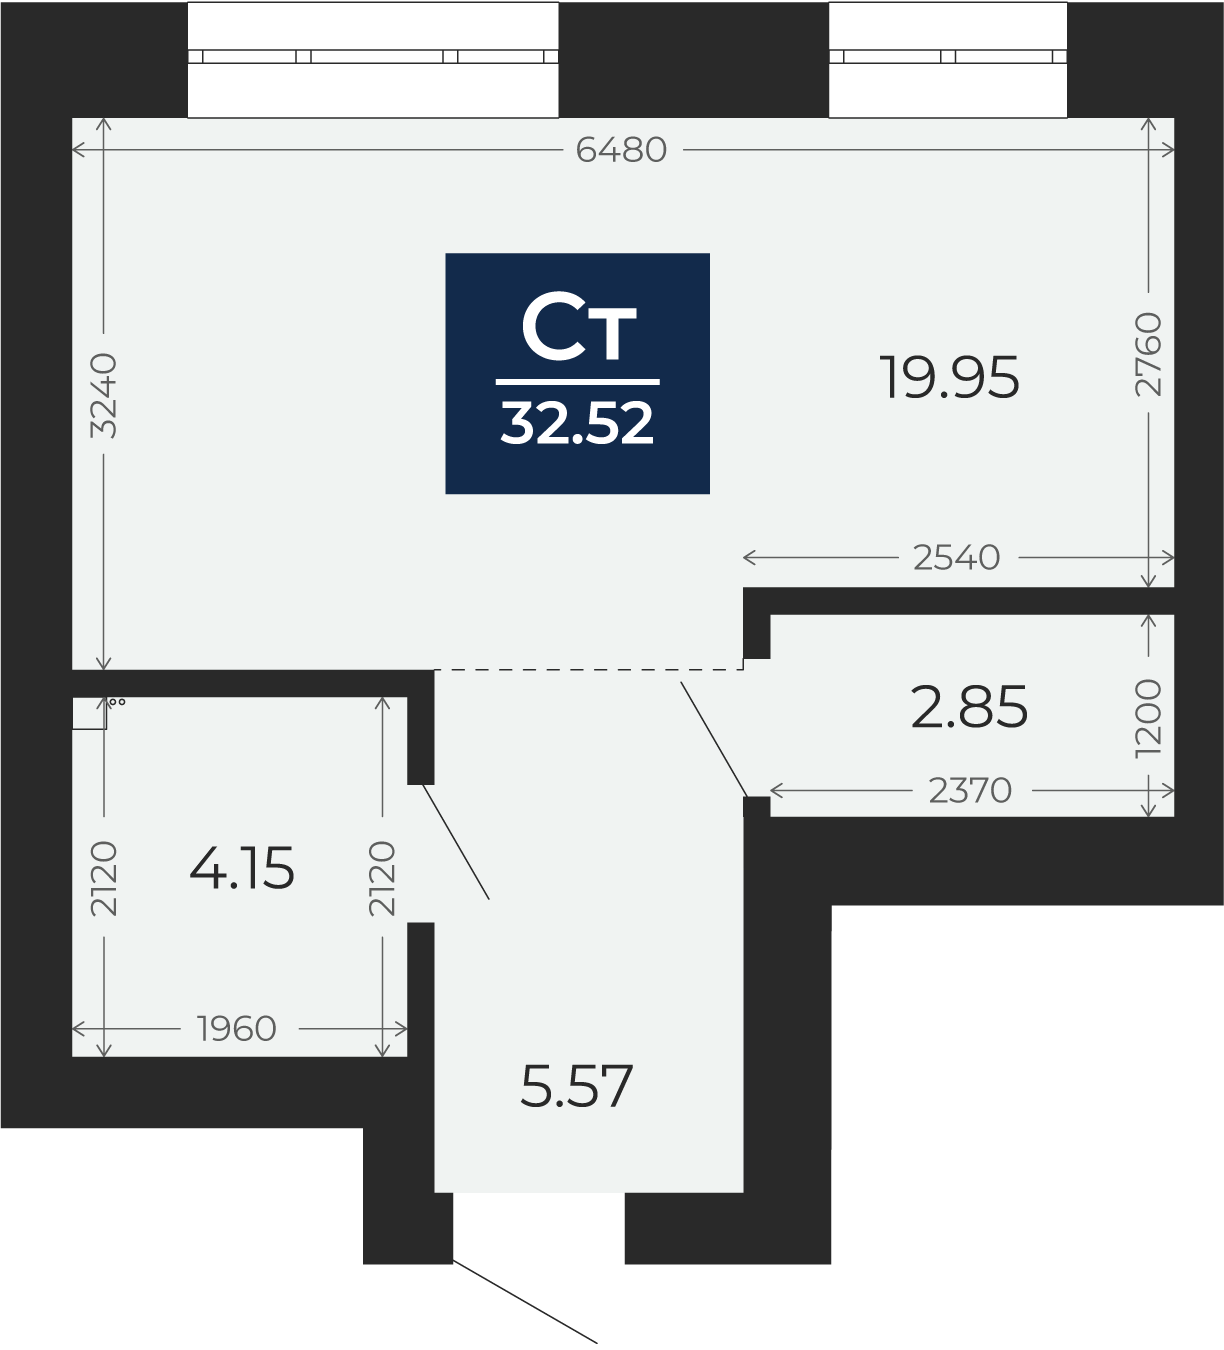 Квартира № 252, Студия, 32.52 кв. м, 10 этаж